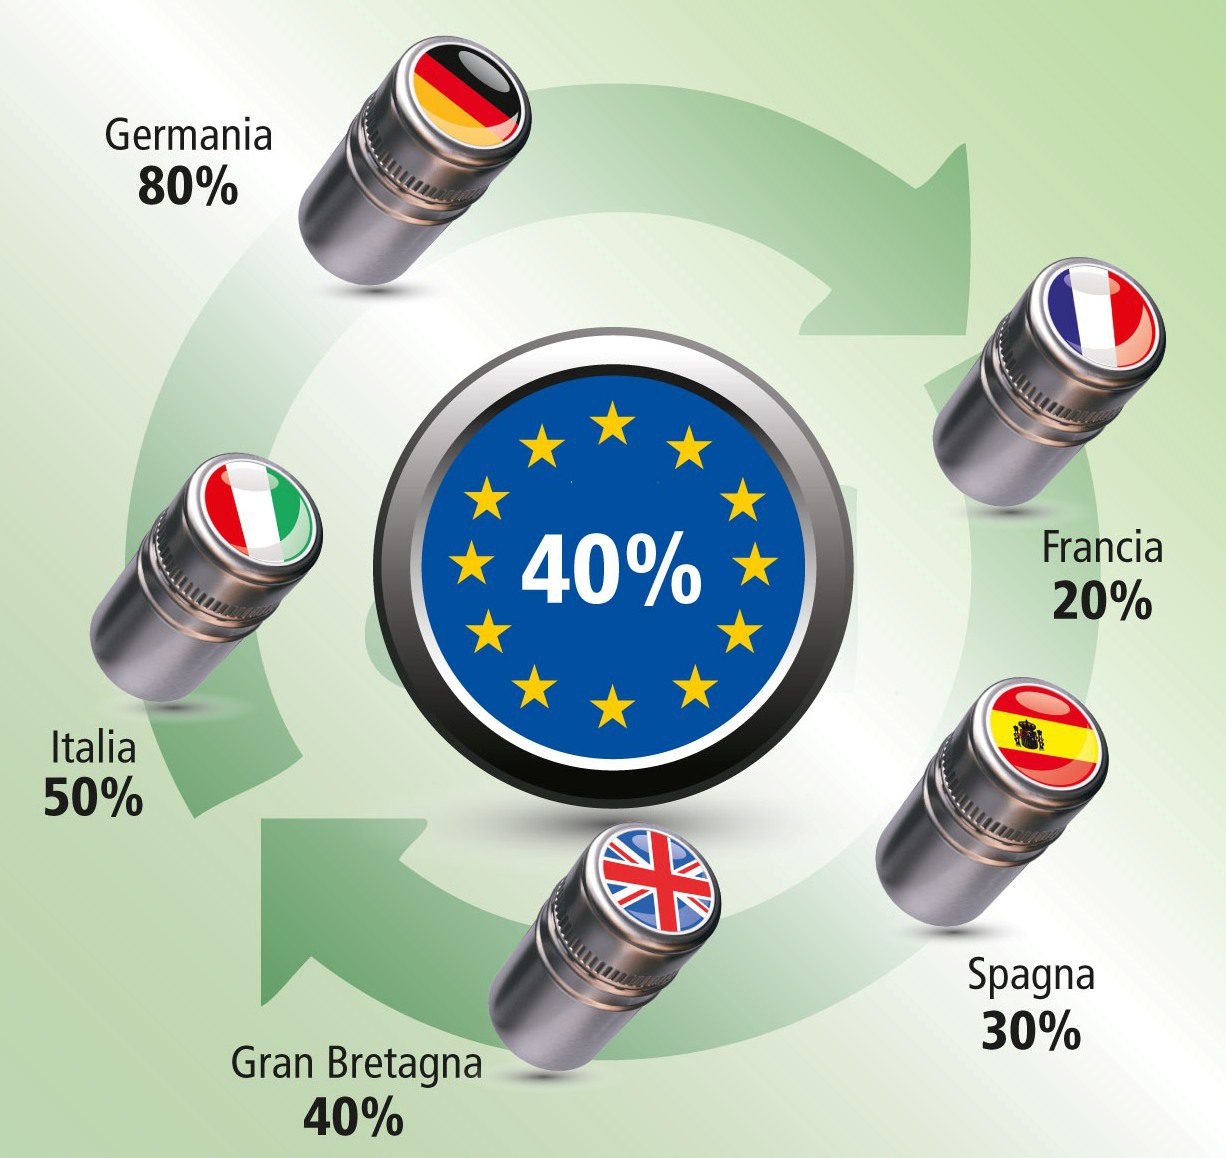 Tappi di alluminio, l'Italia ne ricicla il 50%